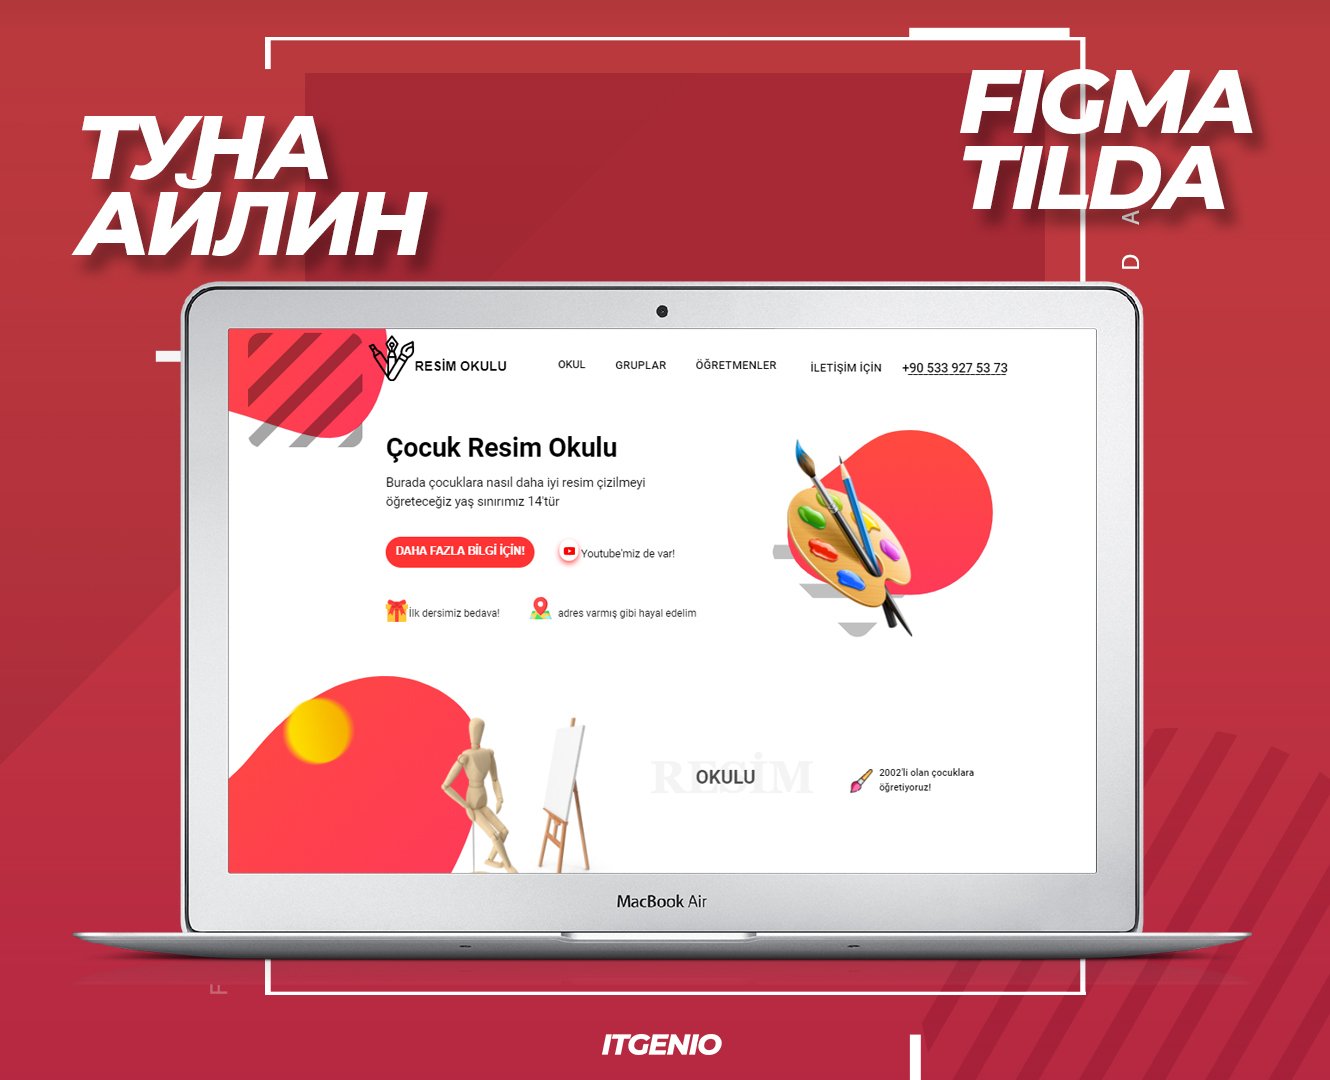 Айтигенио – Онлайн курсы по веб-дизайну и созданию сайтов в Figma и Tilda для детей 9-18 лет, фото курса 5